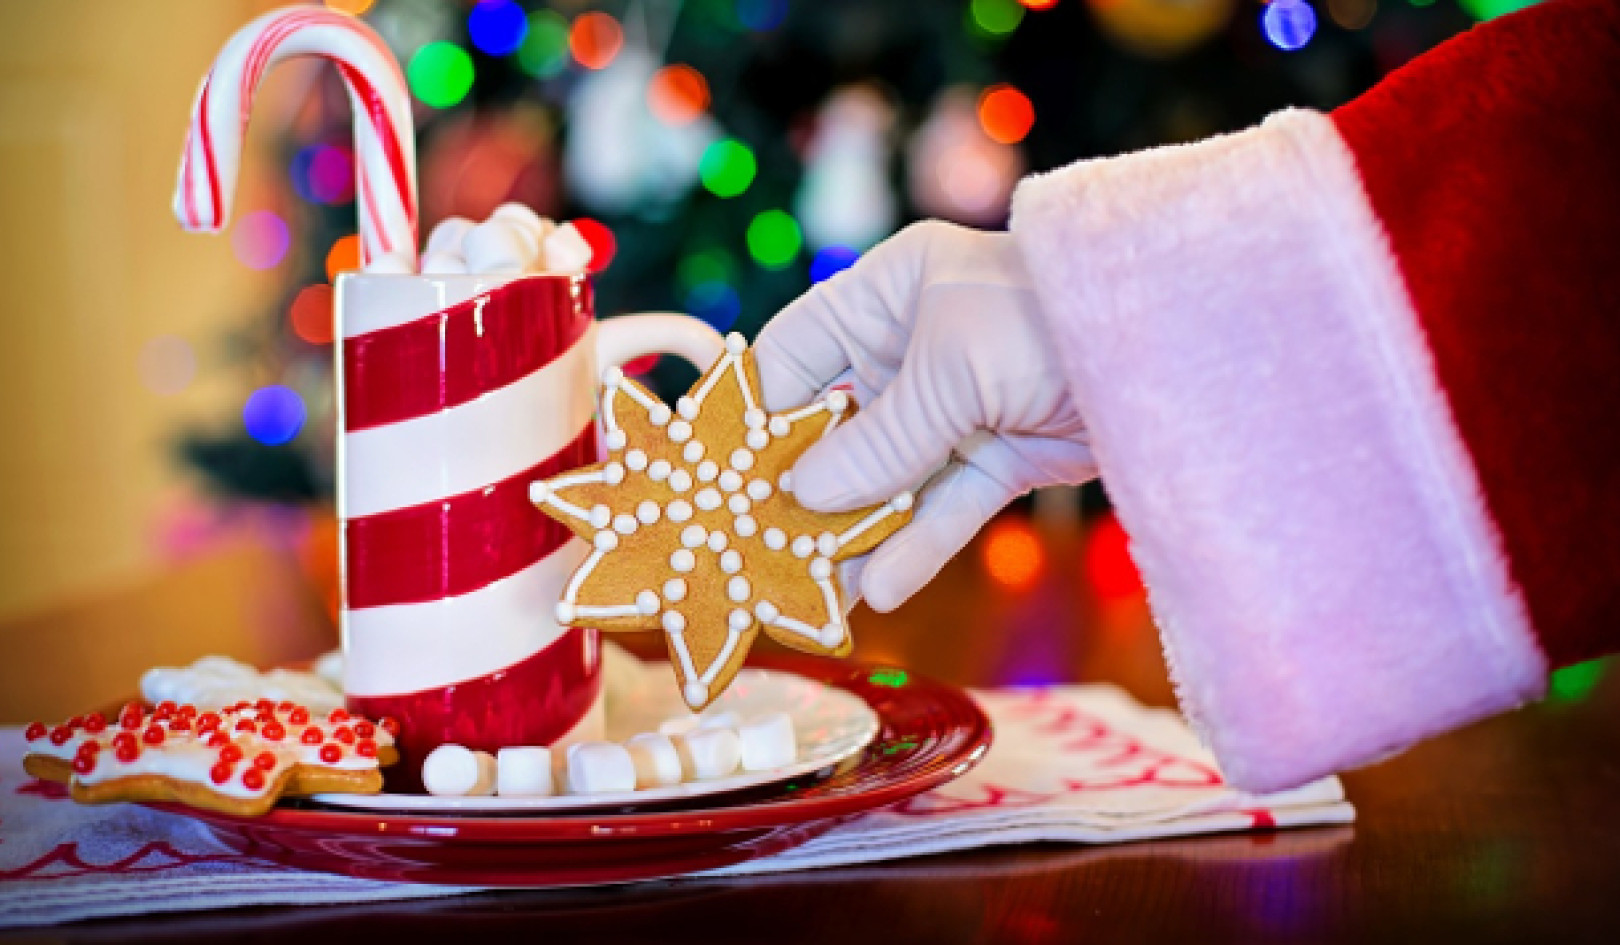 Noël, solstice d'hiver, Noël : un mélange de traditions ?